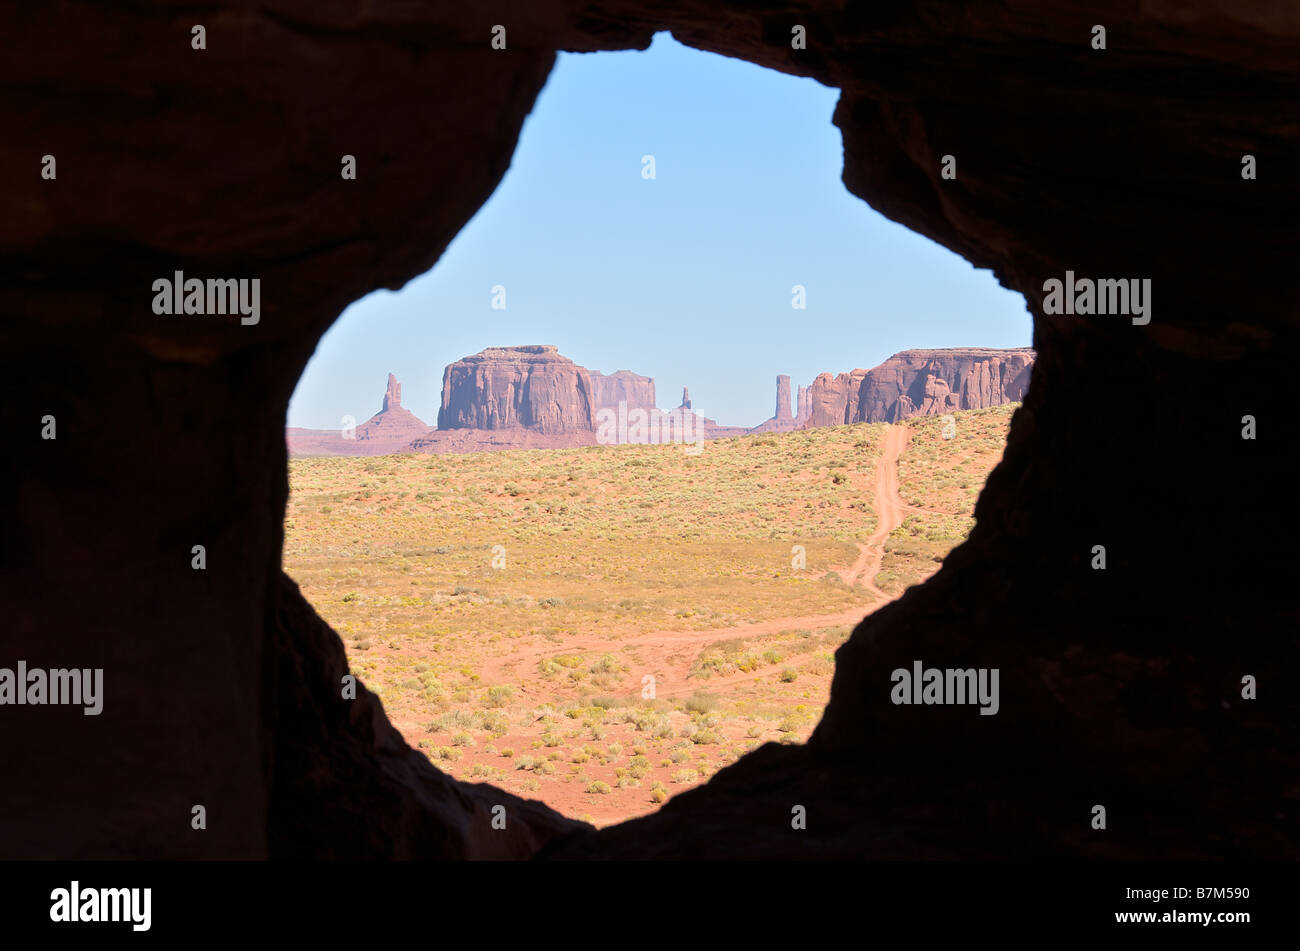 Buttes und Mesas durch Bogen Monument Valley Navajo Tribal Park Arizona USA anzeigen Stockfoto